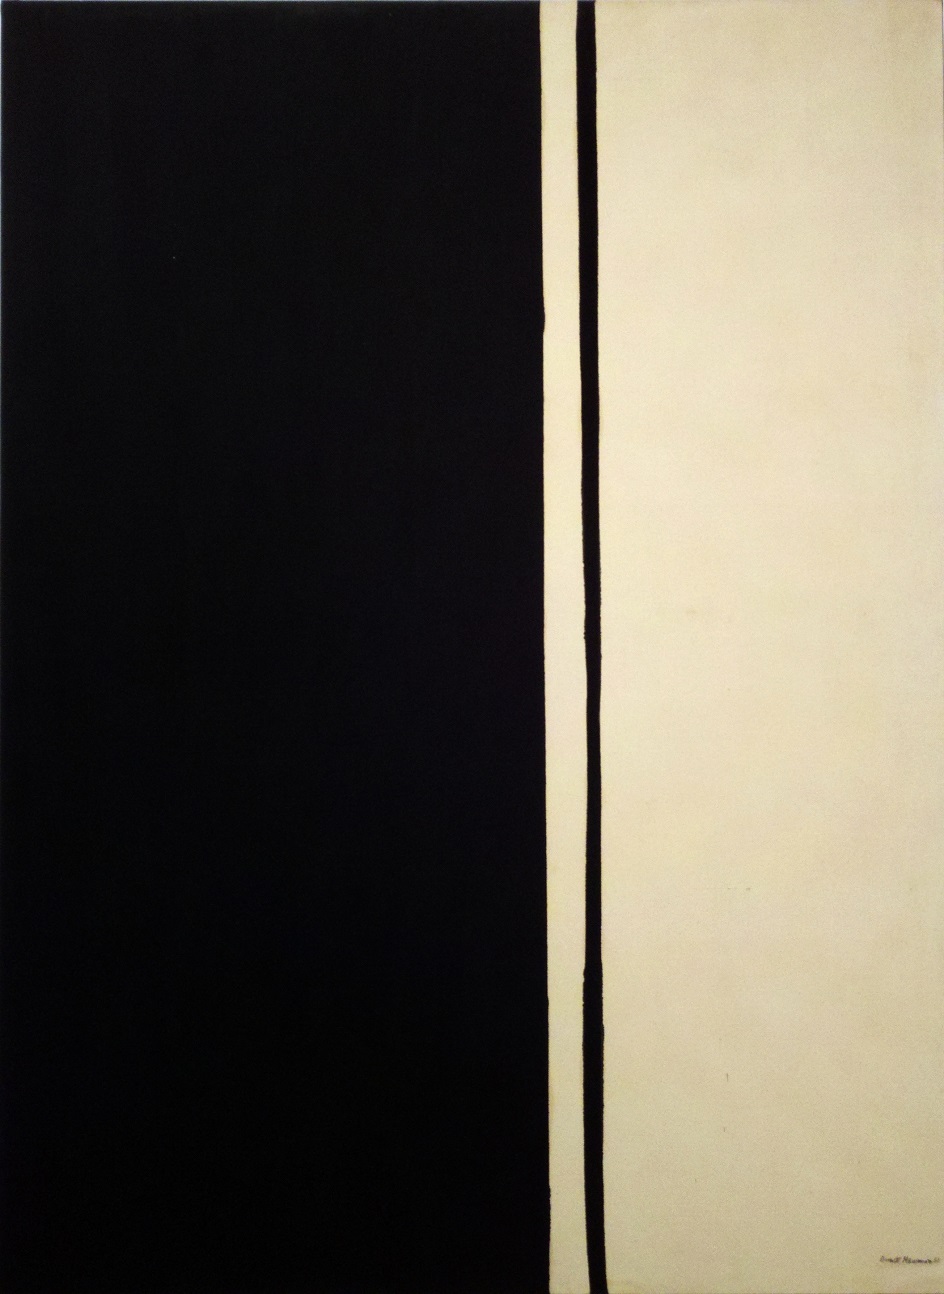 Барнетт Ньюман. Картина Black Fire I, 1961